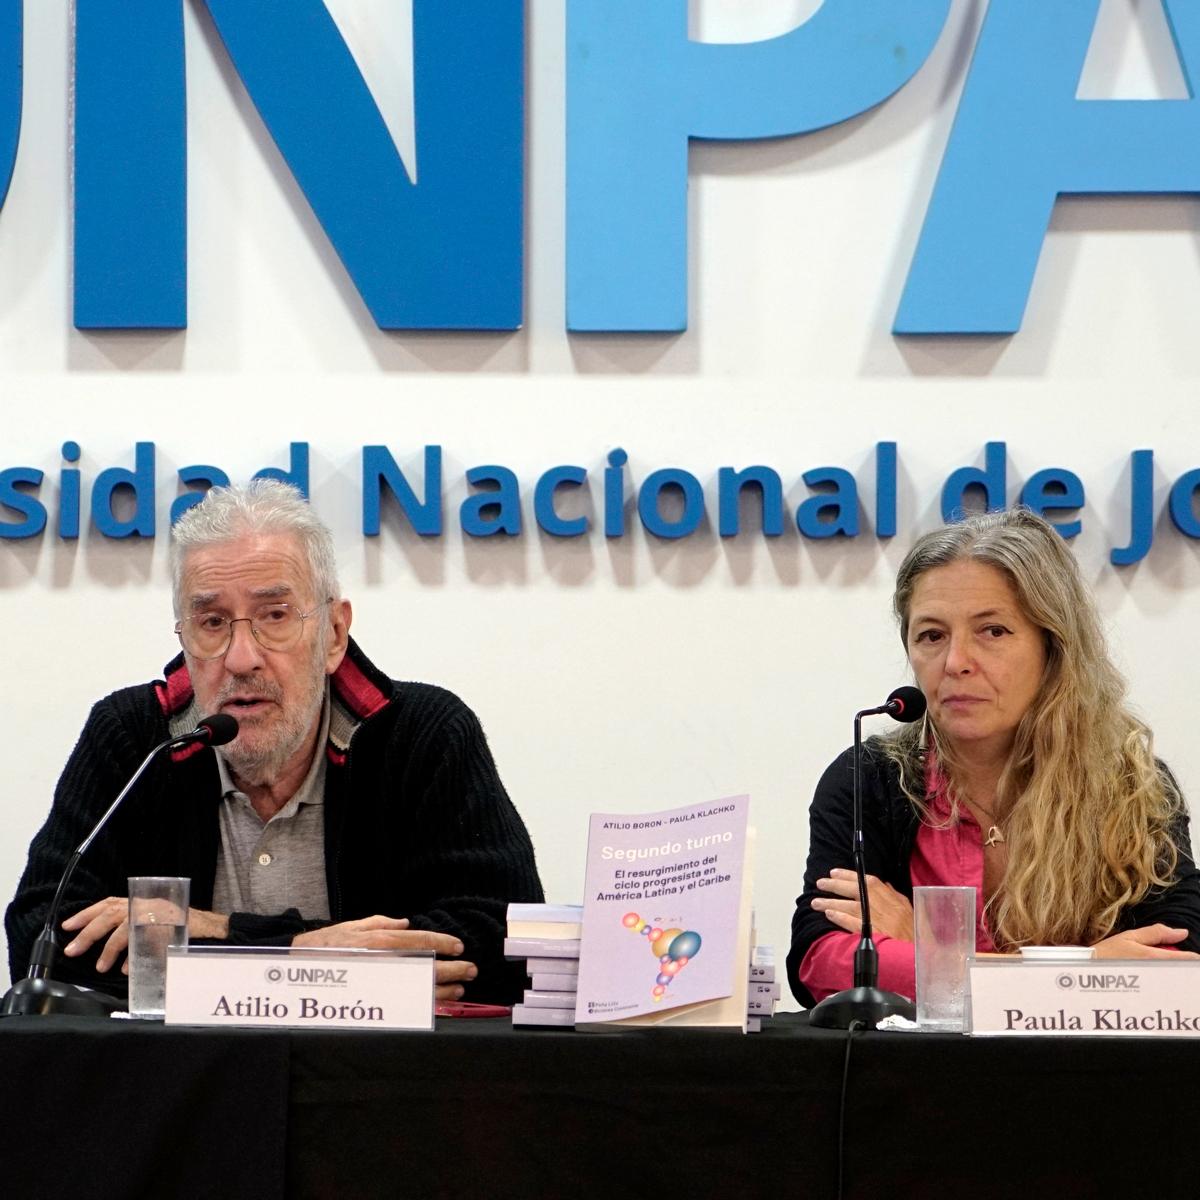 El último libro de Atilio Borón  y Paula Klachko fue presentado en la UNPAZ